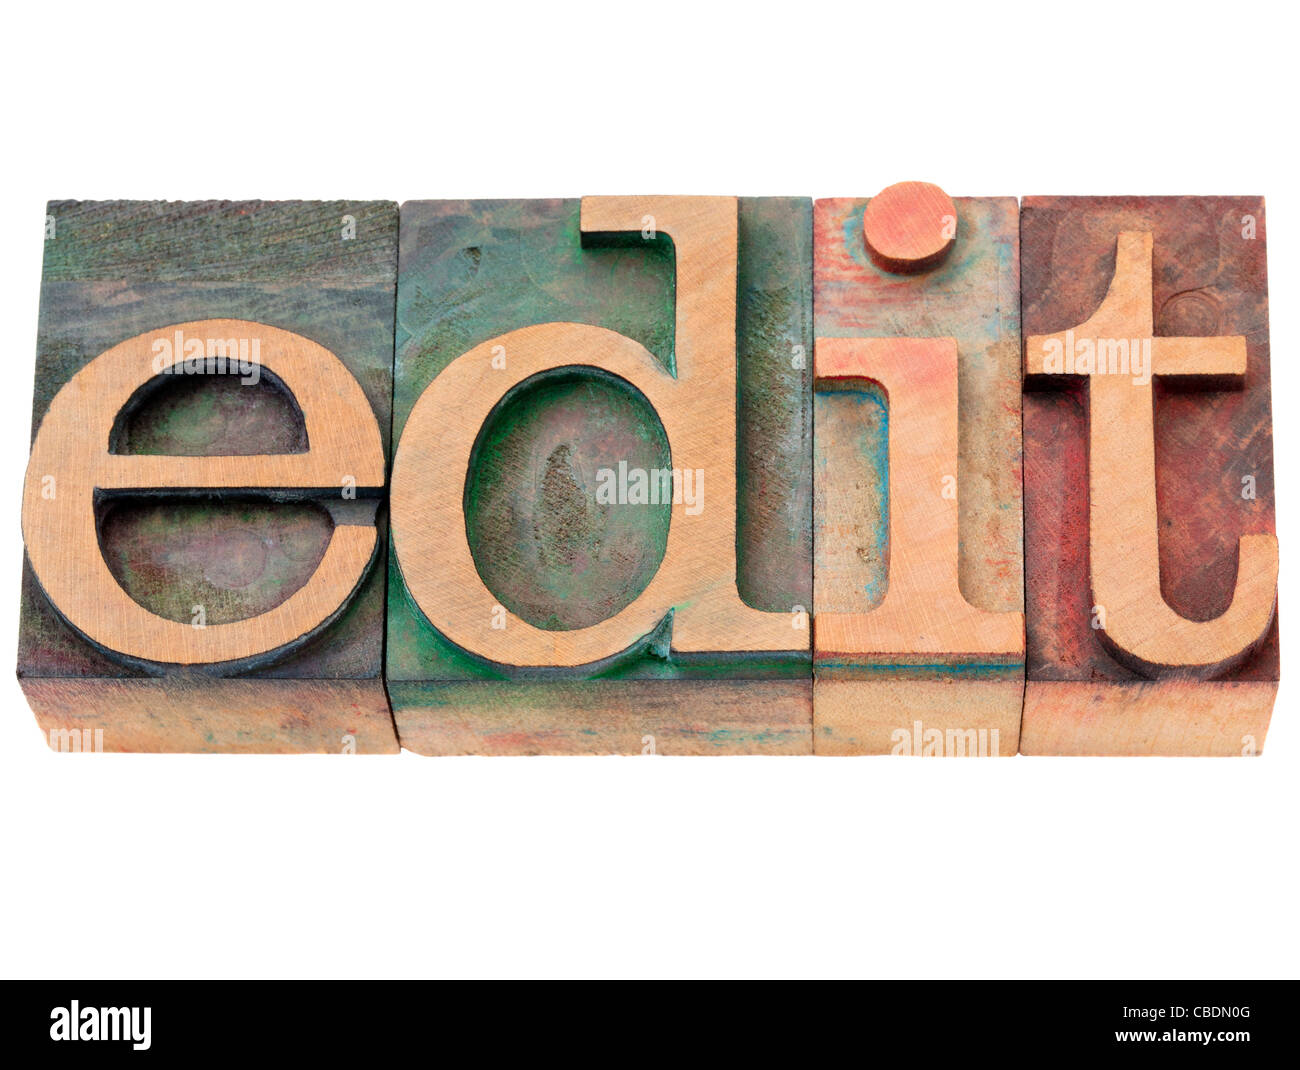 Editar - palabra aislada en vintage tipografía bloques de madera Foto de stock